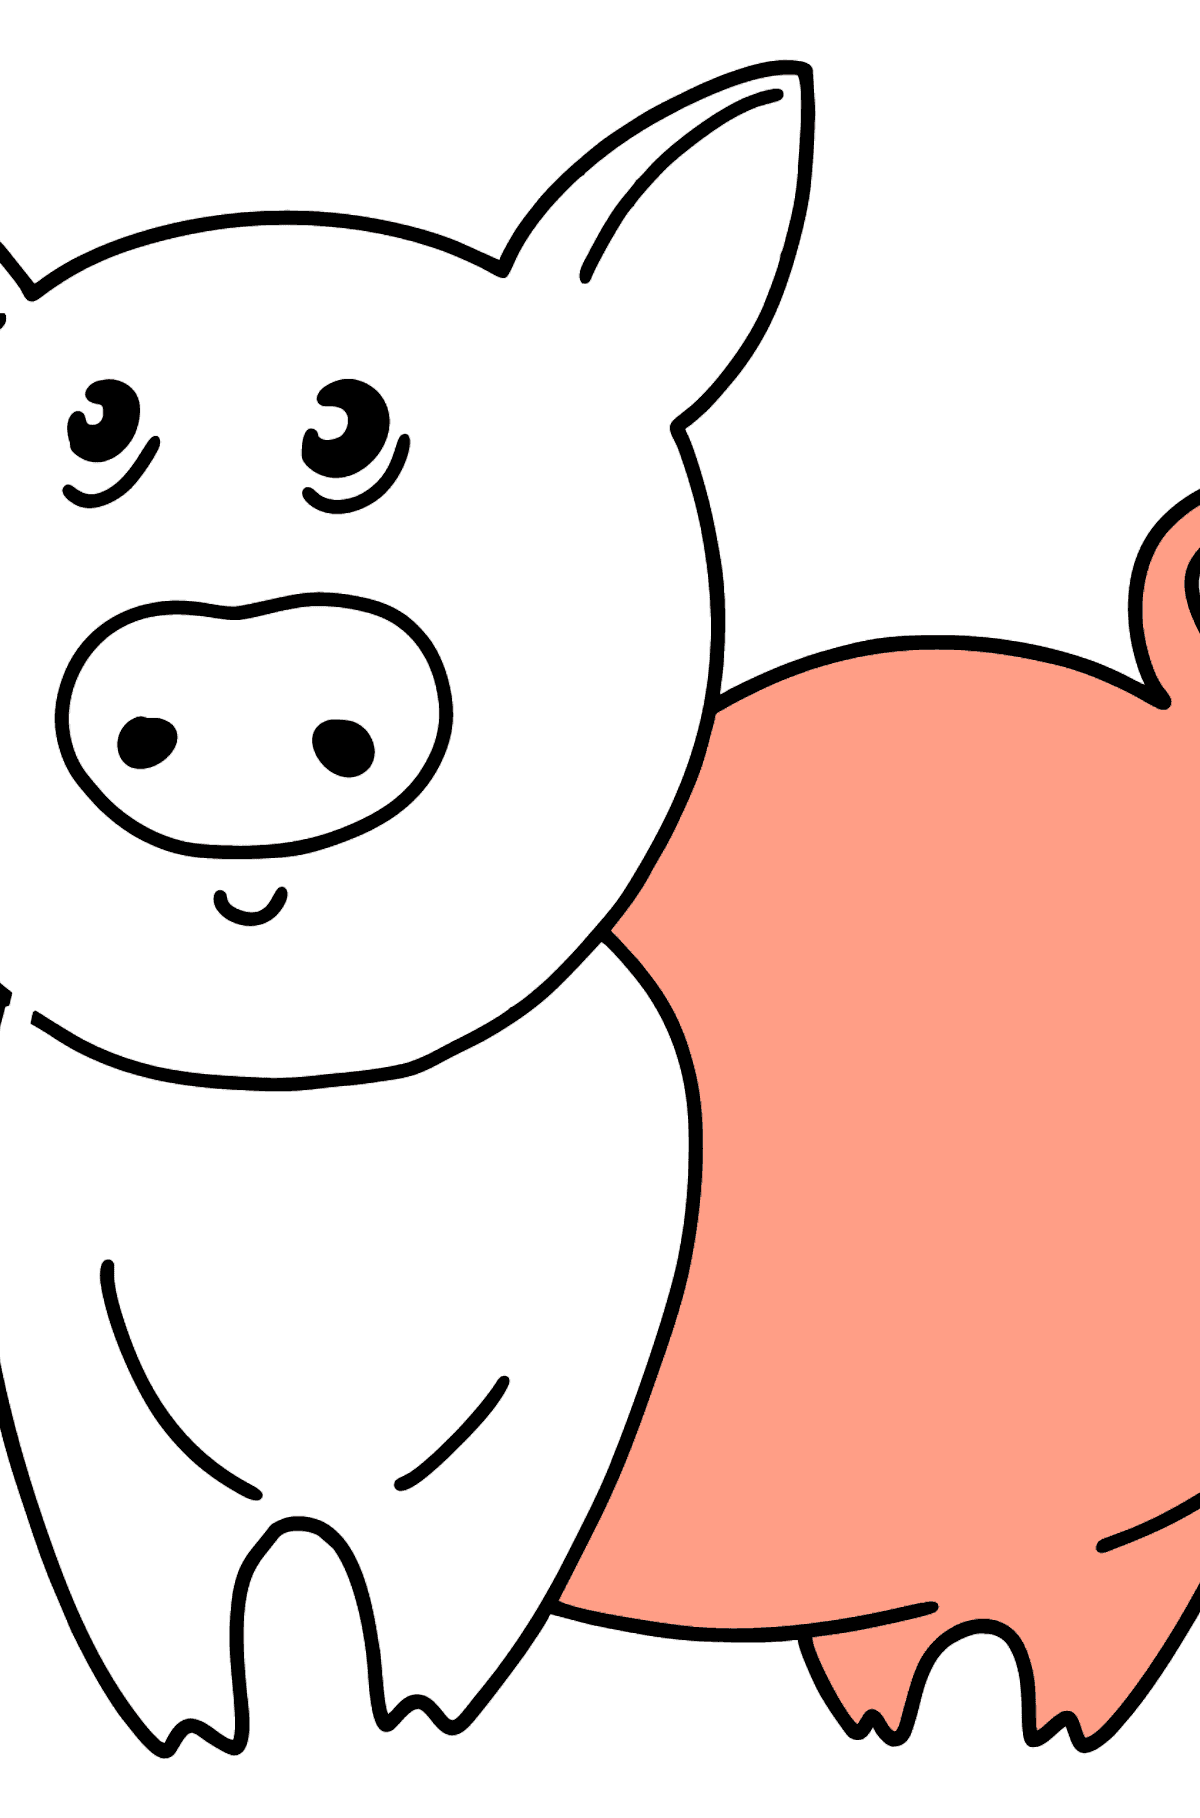 Ausmalbild Schwein - Malvorlagen für Kinder